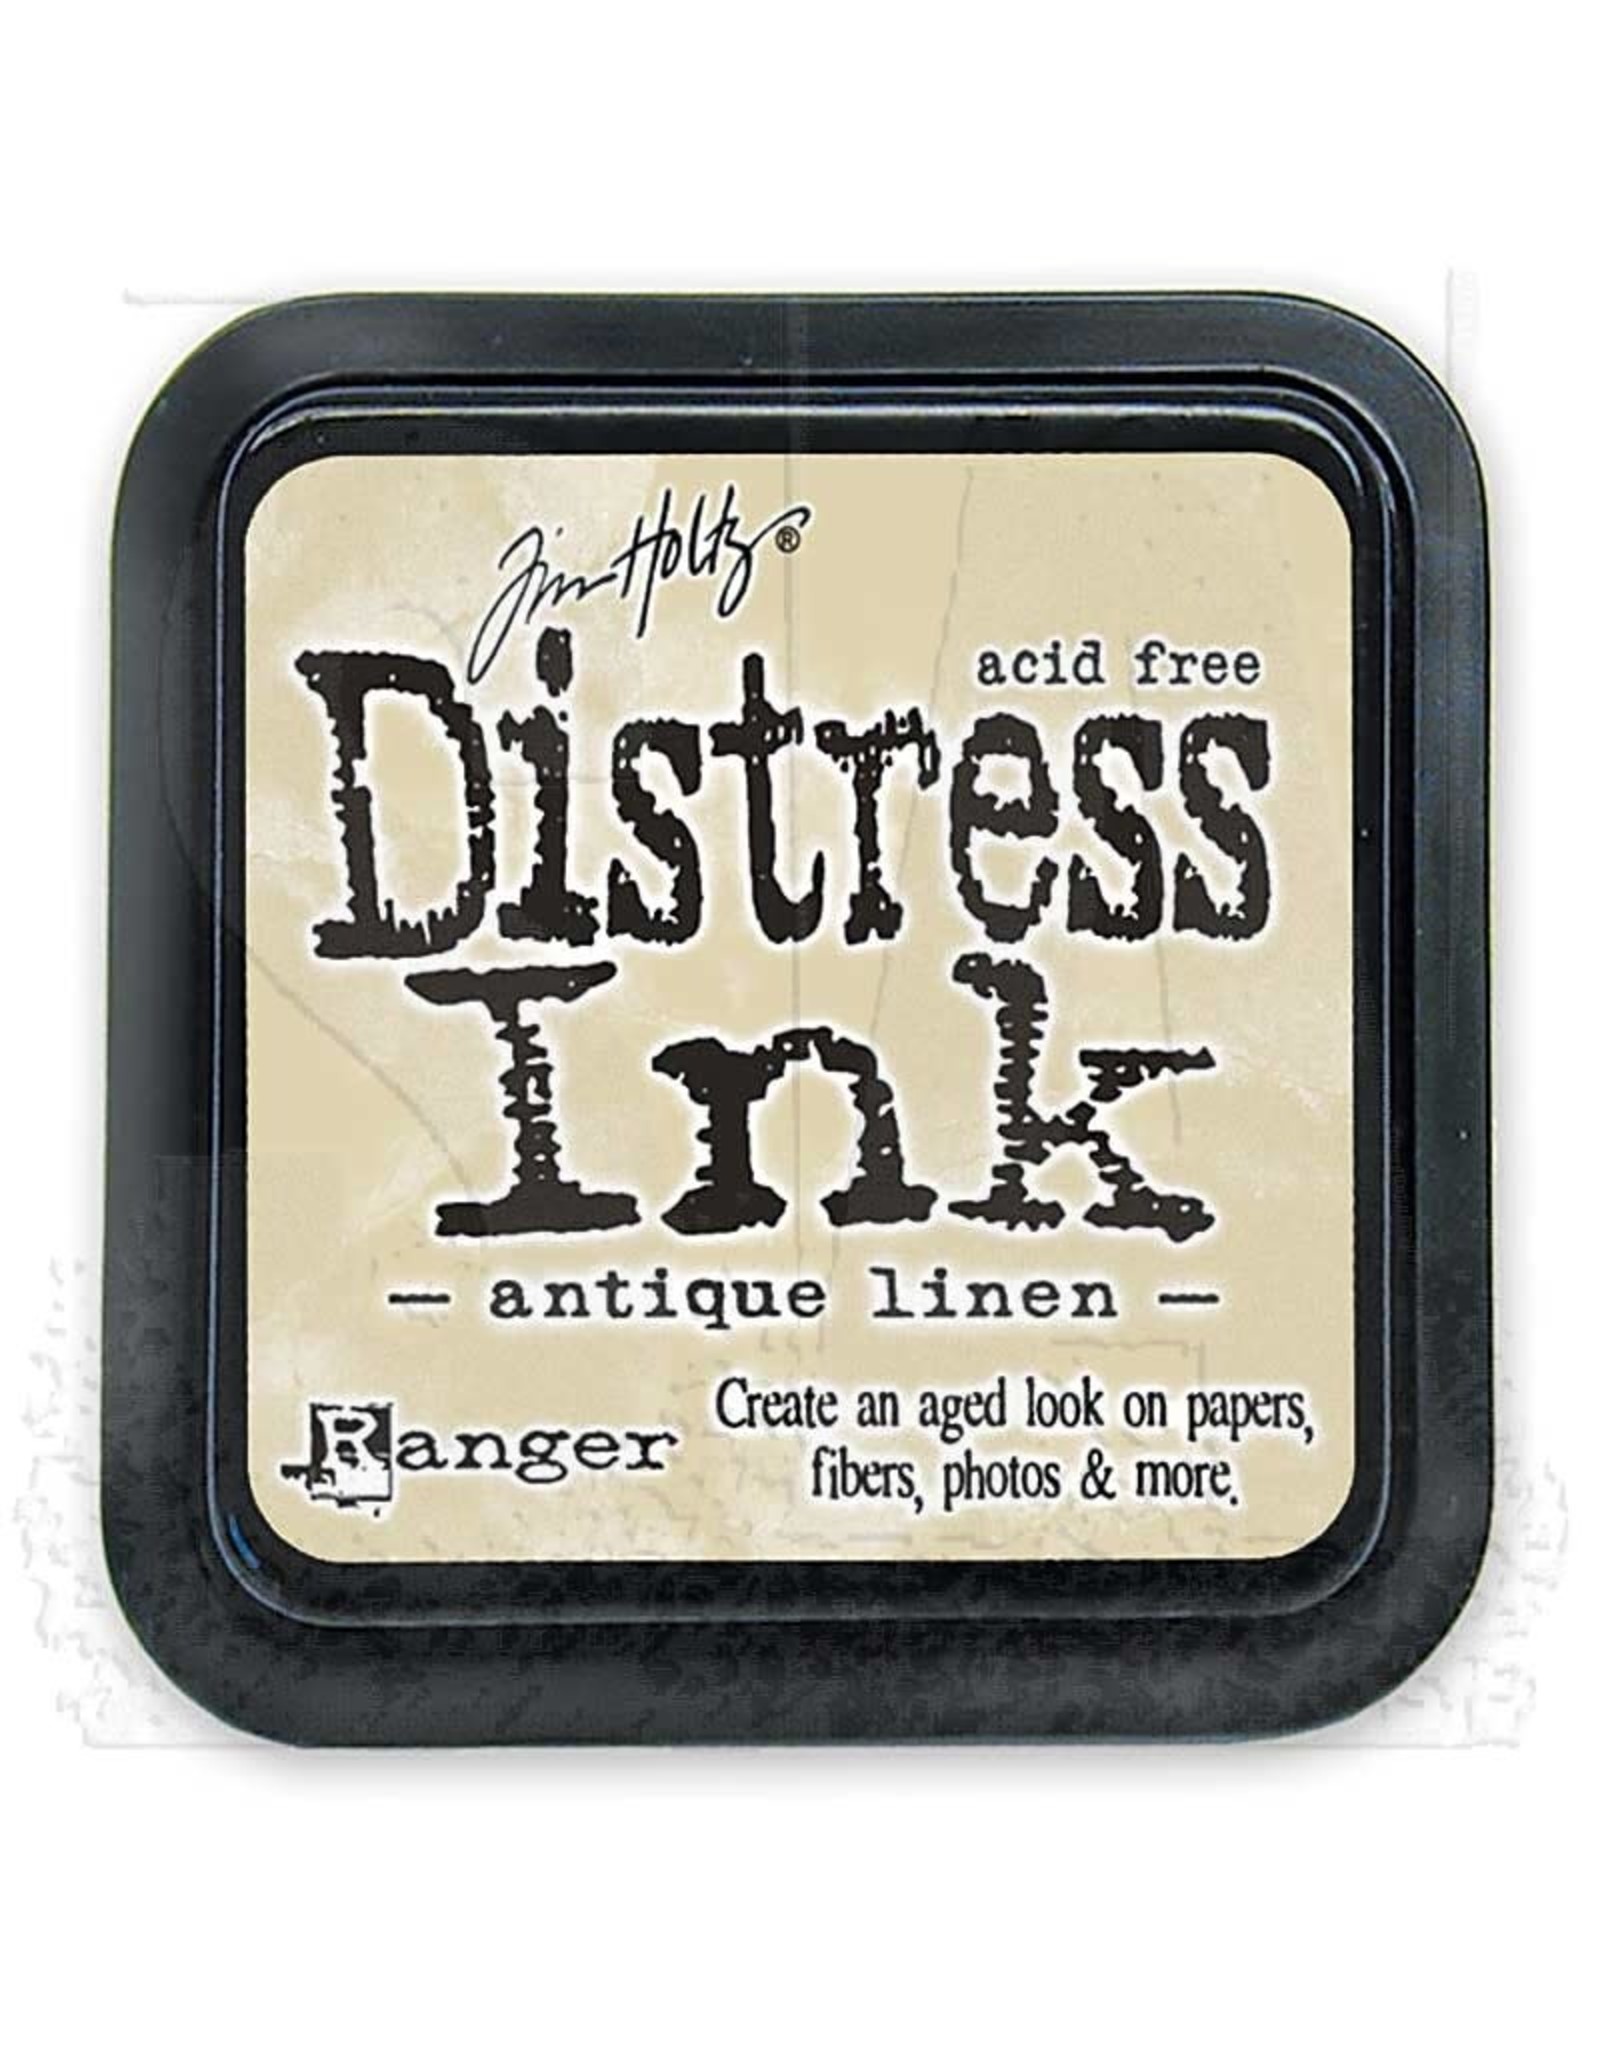 Tim Holtz - Ranger Distress Ink Antique Linen